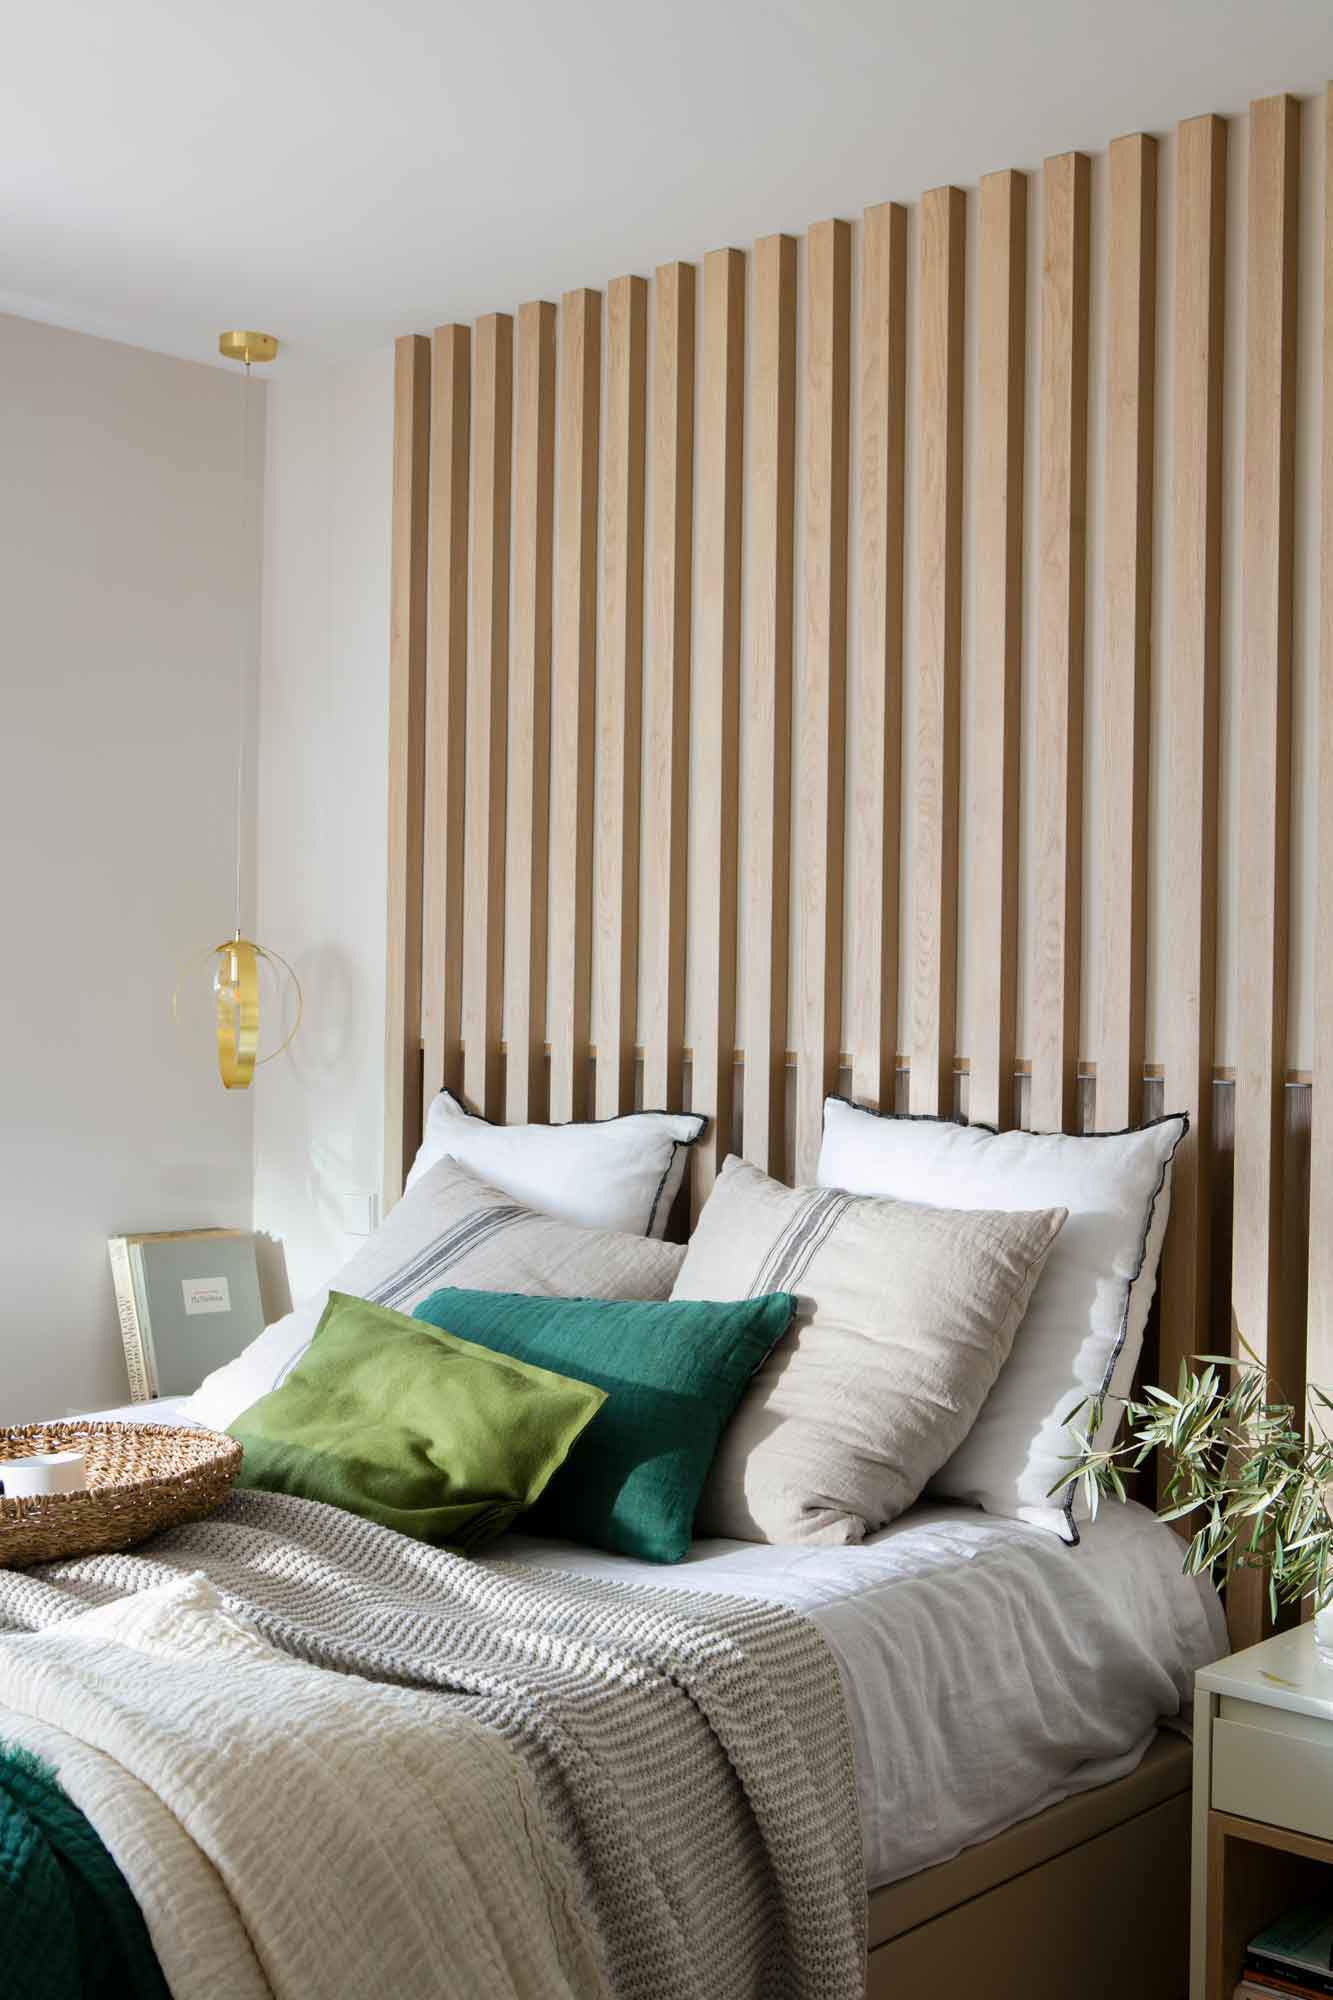 Dormitorio con listones de madera en el cabecero.